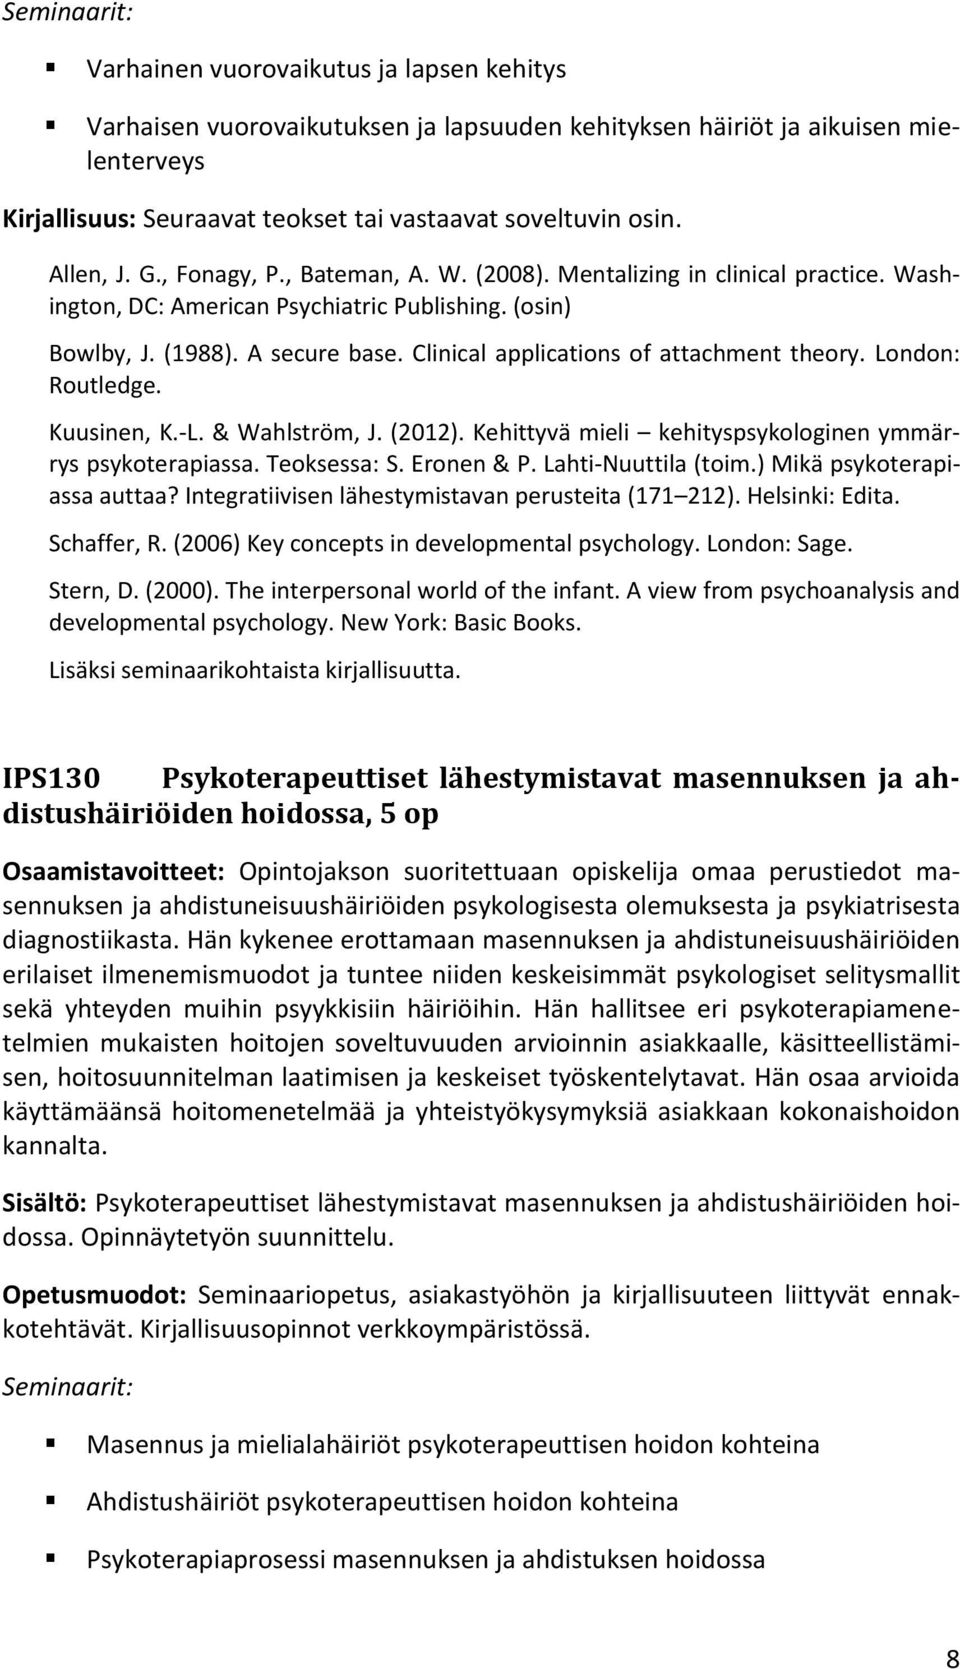 Clinical applications of attachment theory. London: Routledge. Kuusinen, K.-L. & Wahlström, J. (2012). Kehittyvä mieli kehityspsykologinen ymmärrys psykoterapiassa. Teoksessa: S. Eronen & P.